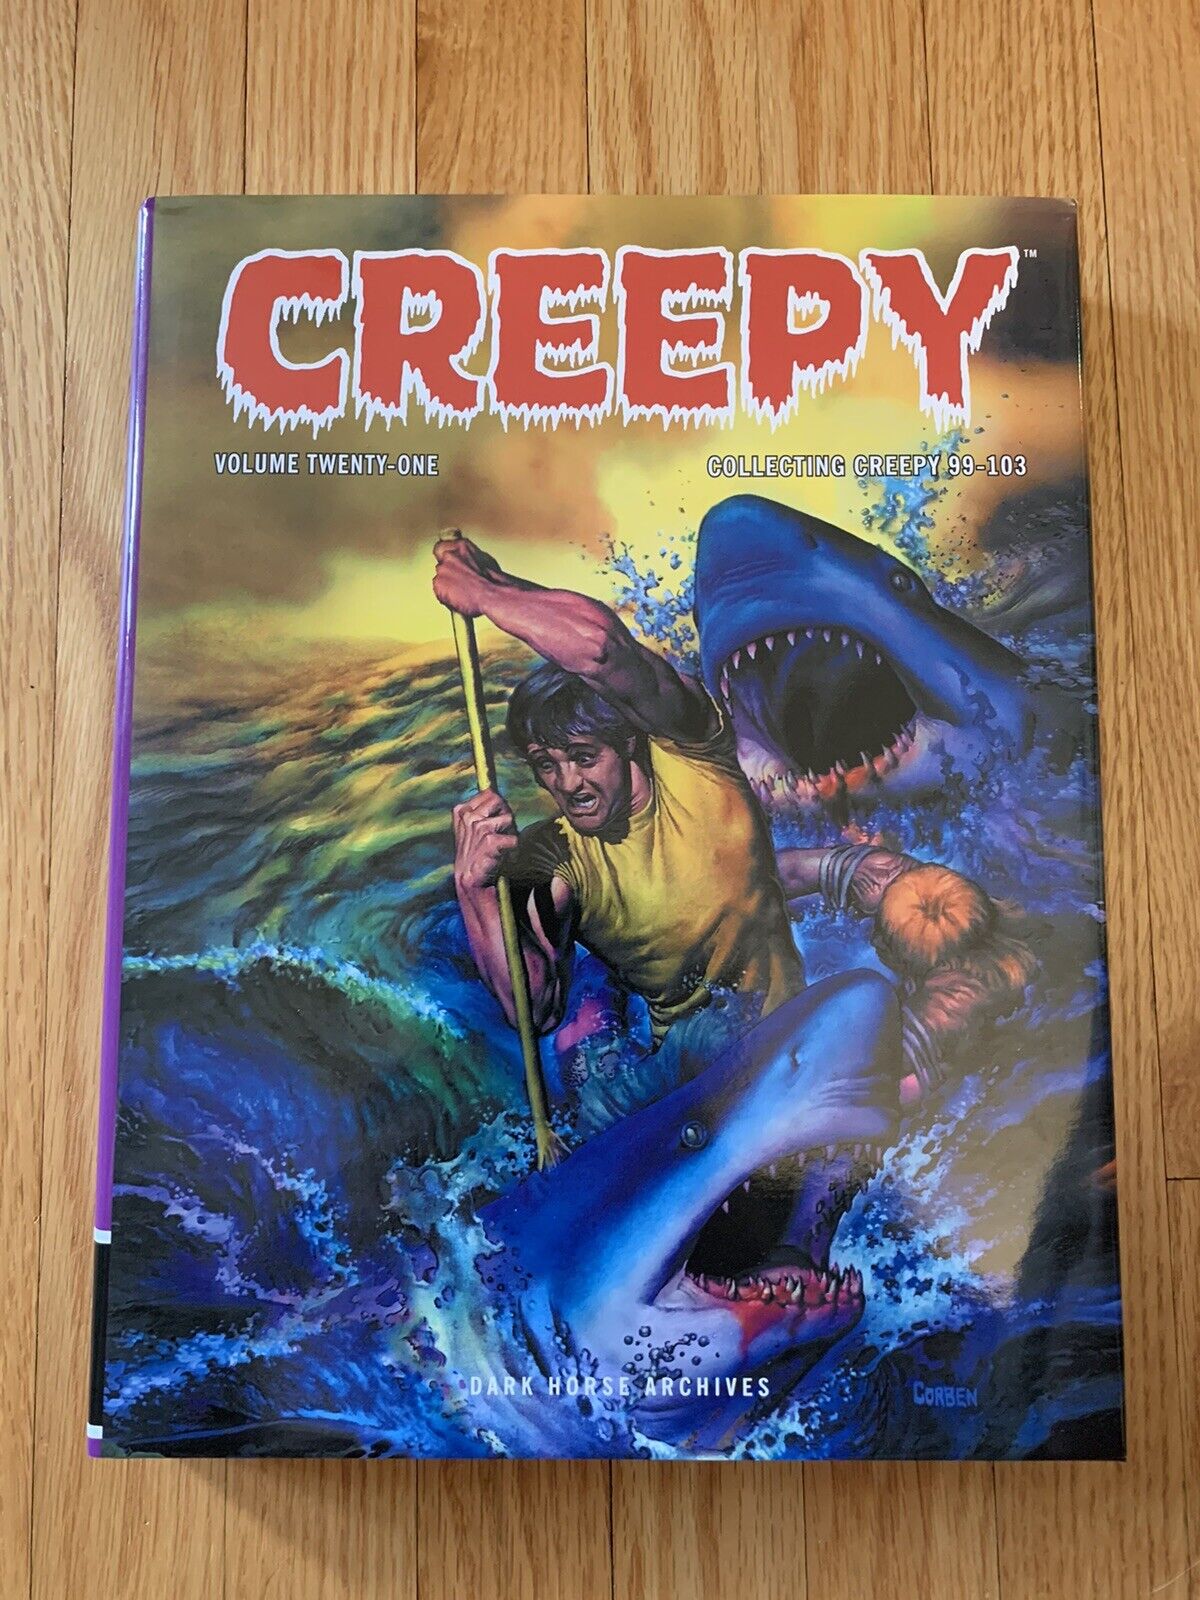 Creepy Archives Volume 21 Twenty One Dark Horse Comics, Creepy 99-103